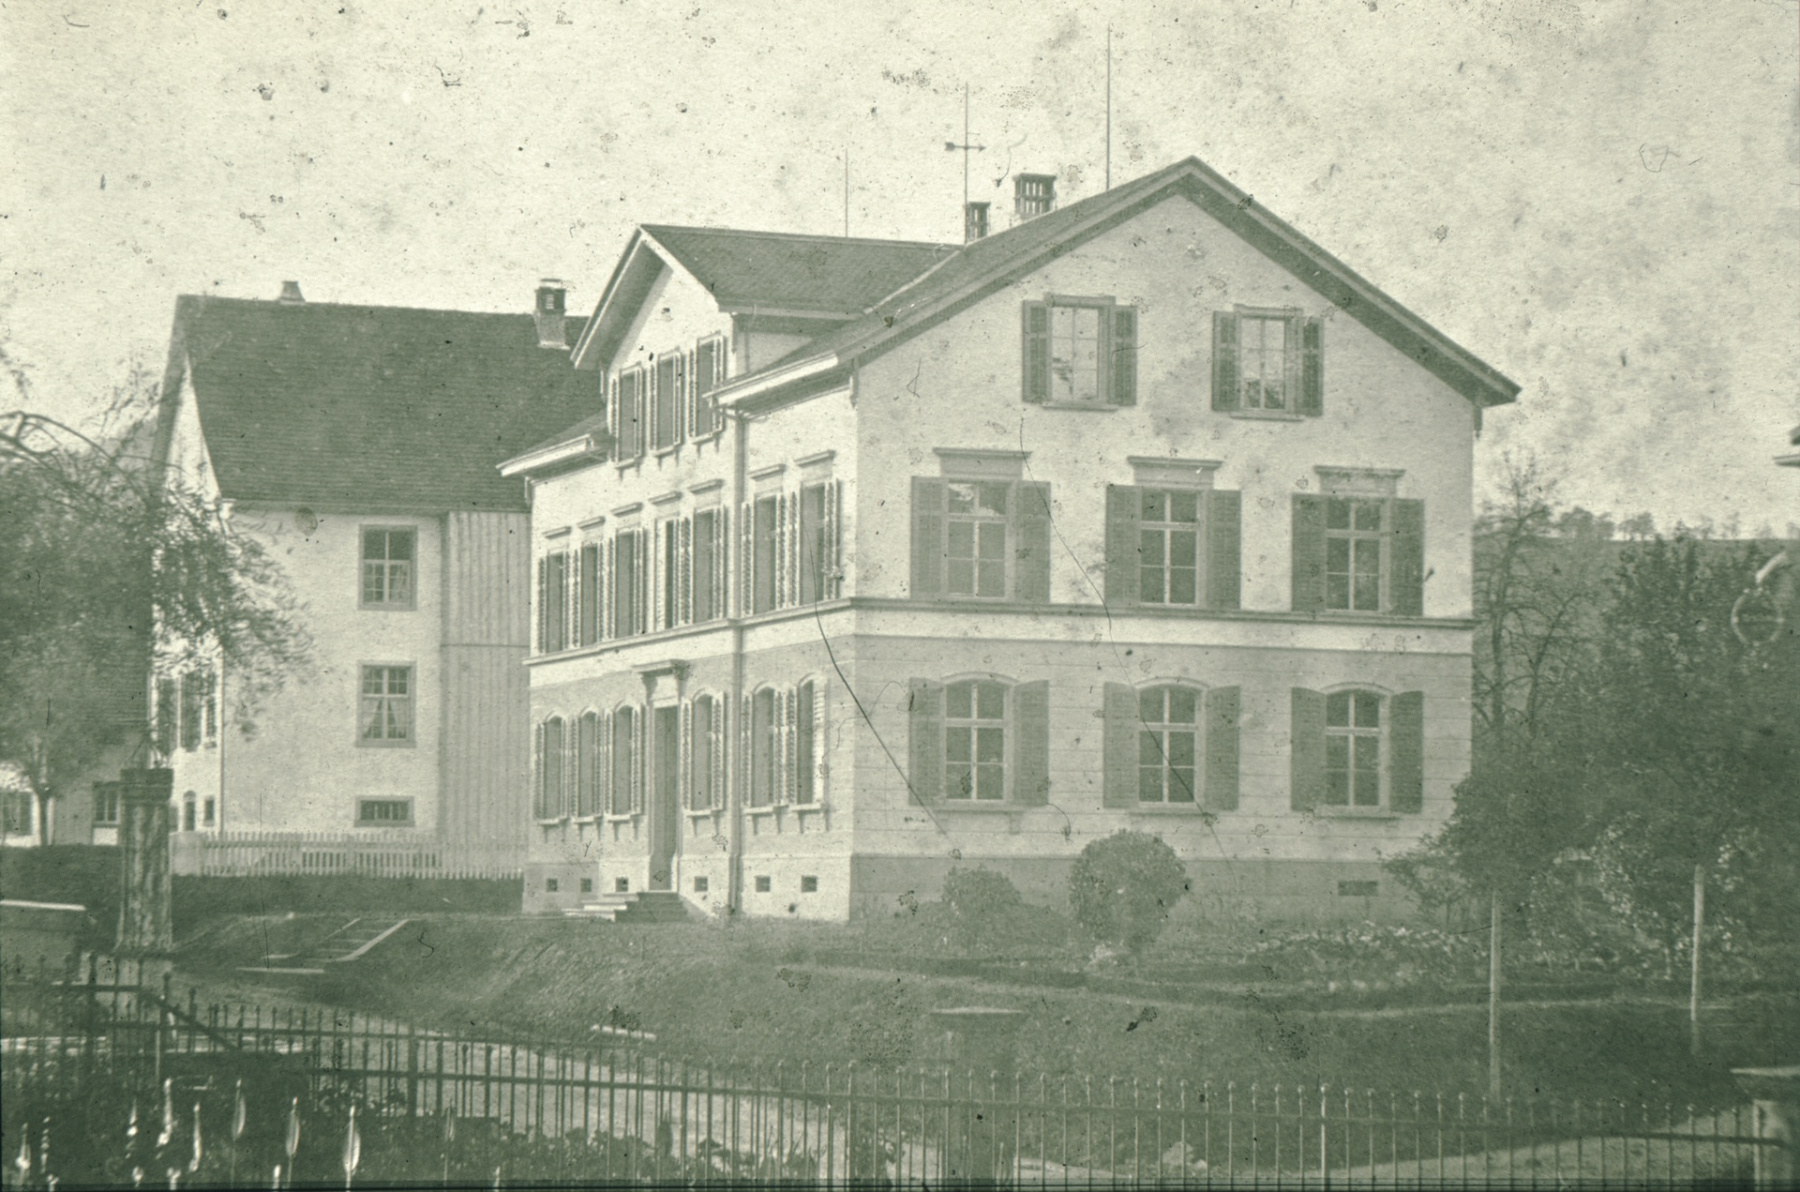 lk Primarschulhaus mit altem Abtritt (Plumpsklo!), rt Sekundarschulhaus 1878-1975